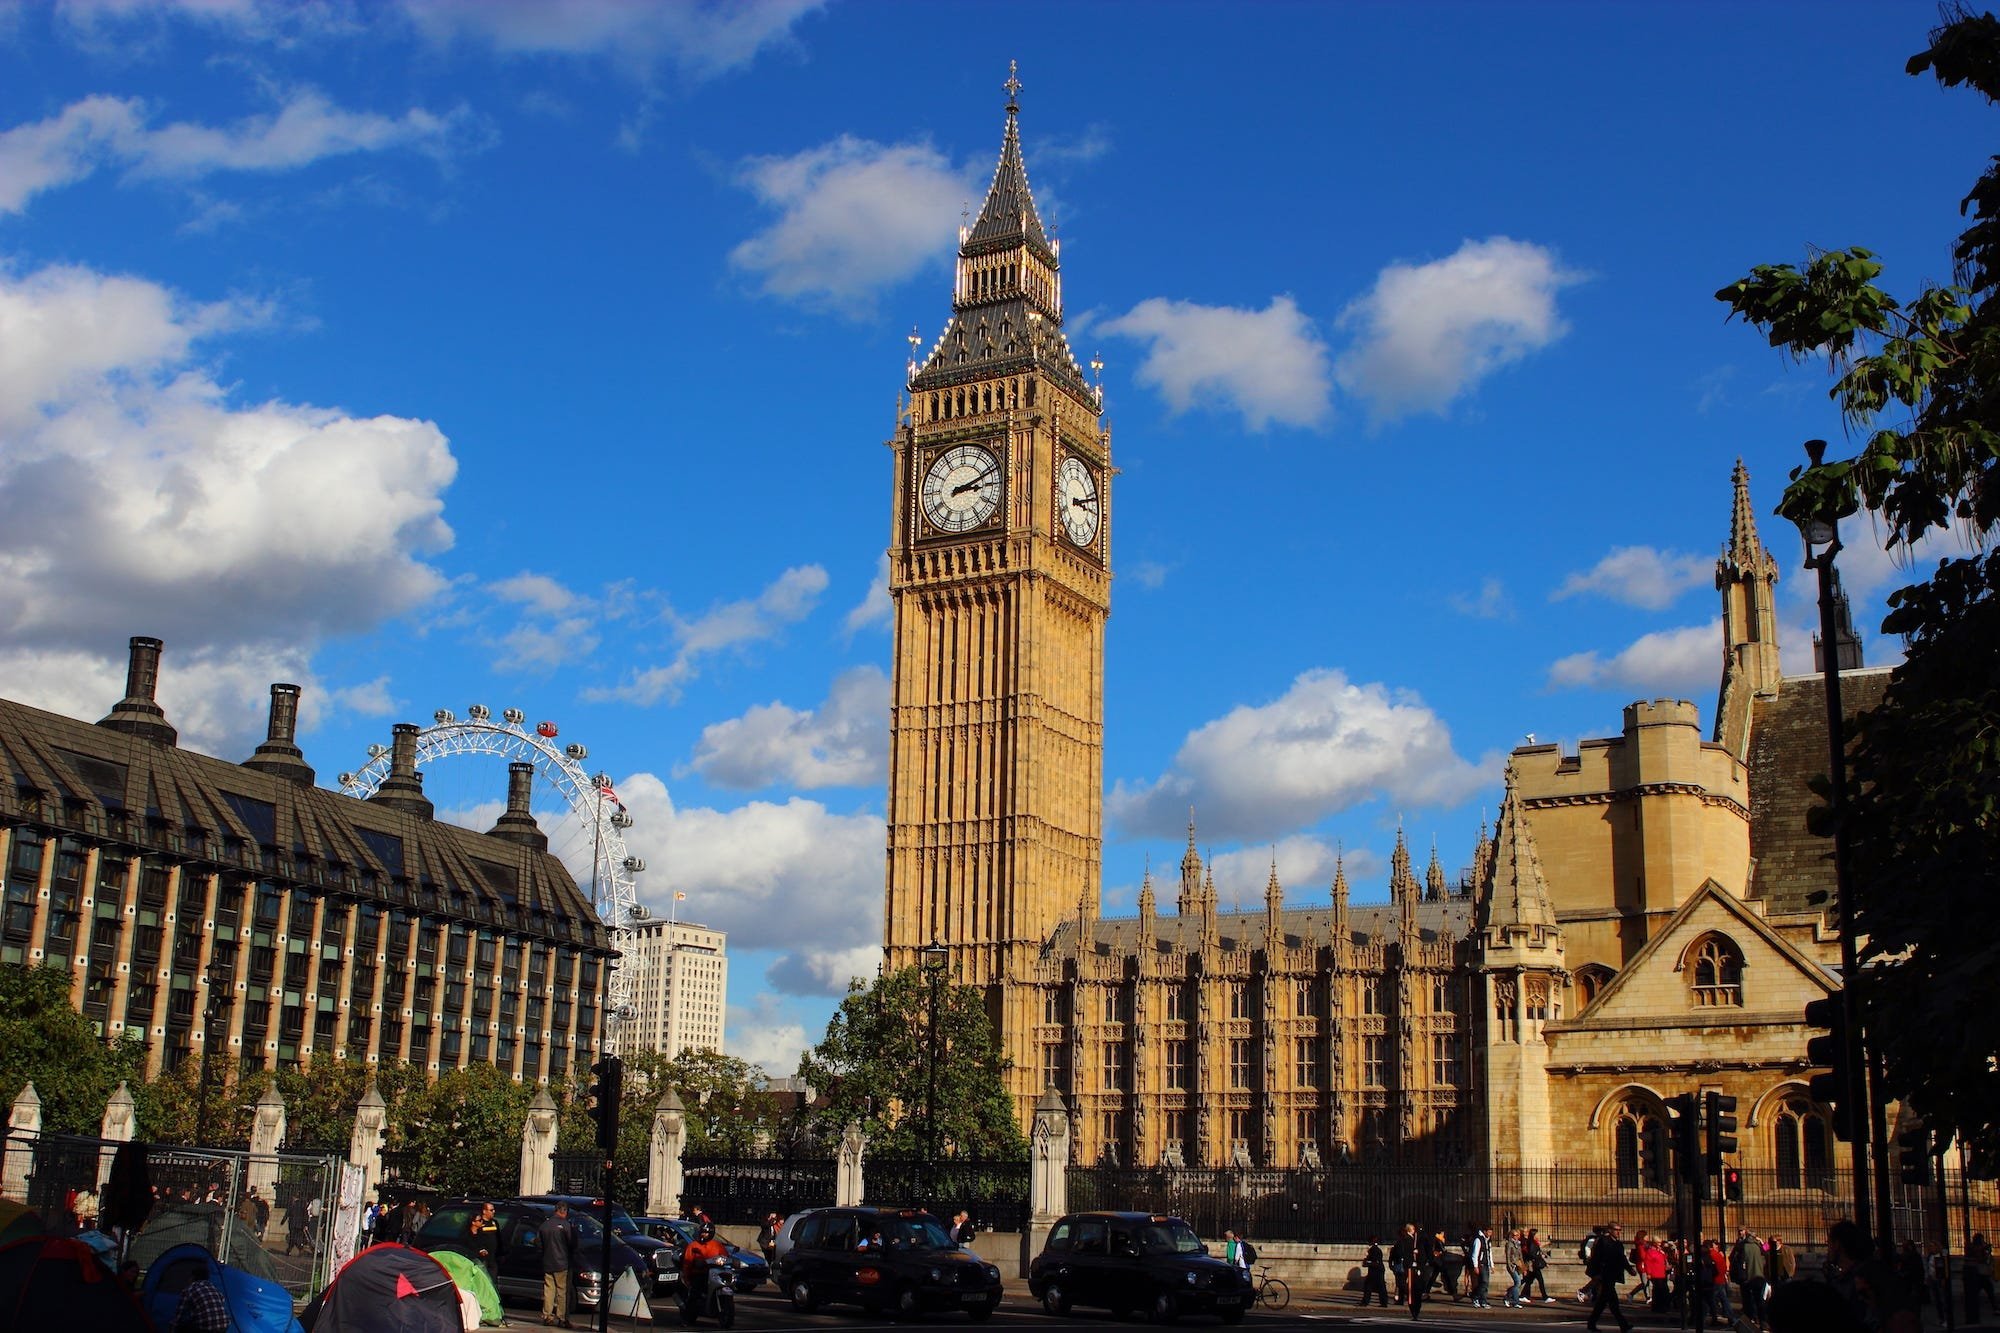 Время в лондоне и москве. Часовая башня Вестминстерского дворца. Лондонская башня Биг Бен. Достопримечательности Лондона Биг Бен. Биг-Бен (башня Елизаветы).